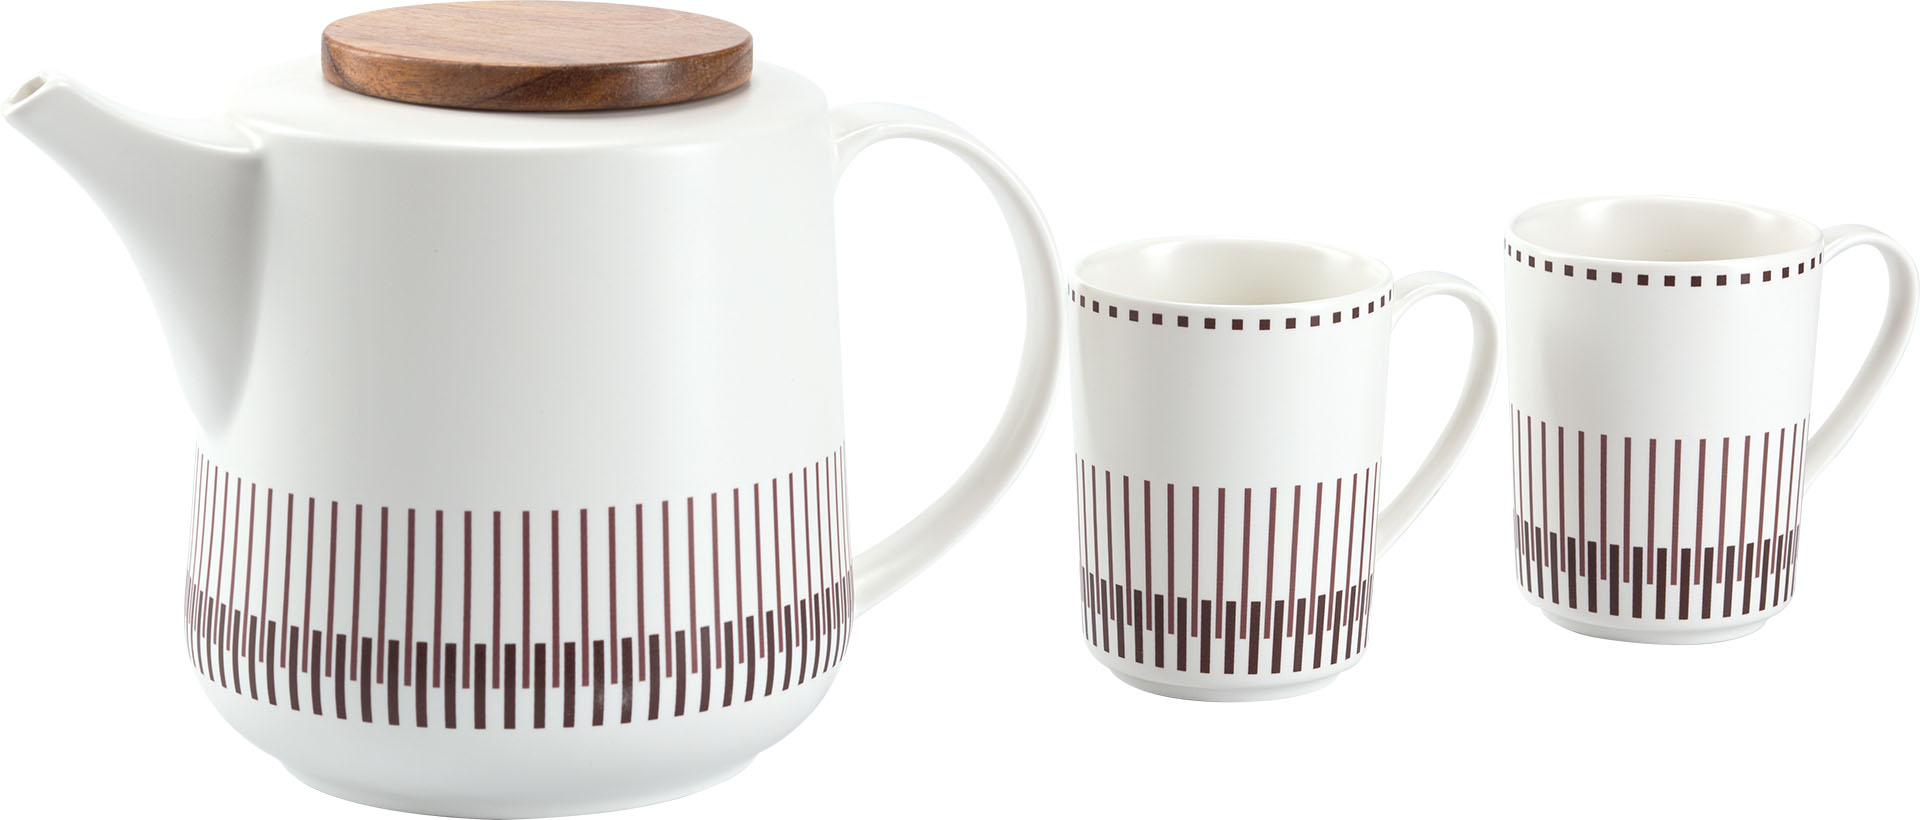 Verle jug + 2 cups, set of 2pcs.